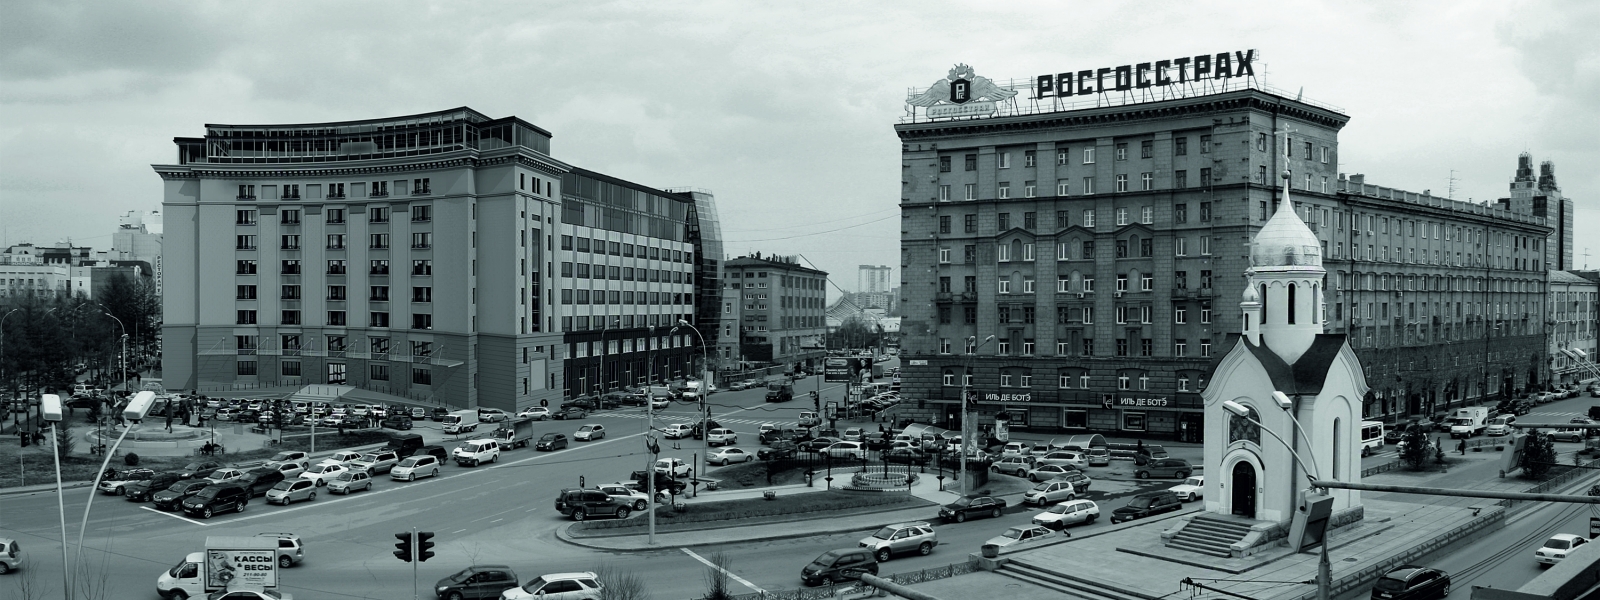 work-Общественно-жилой комплекс на базе реконструкции производственного корпуса №1 НИИИПа в Новосибирске